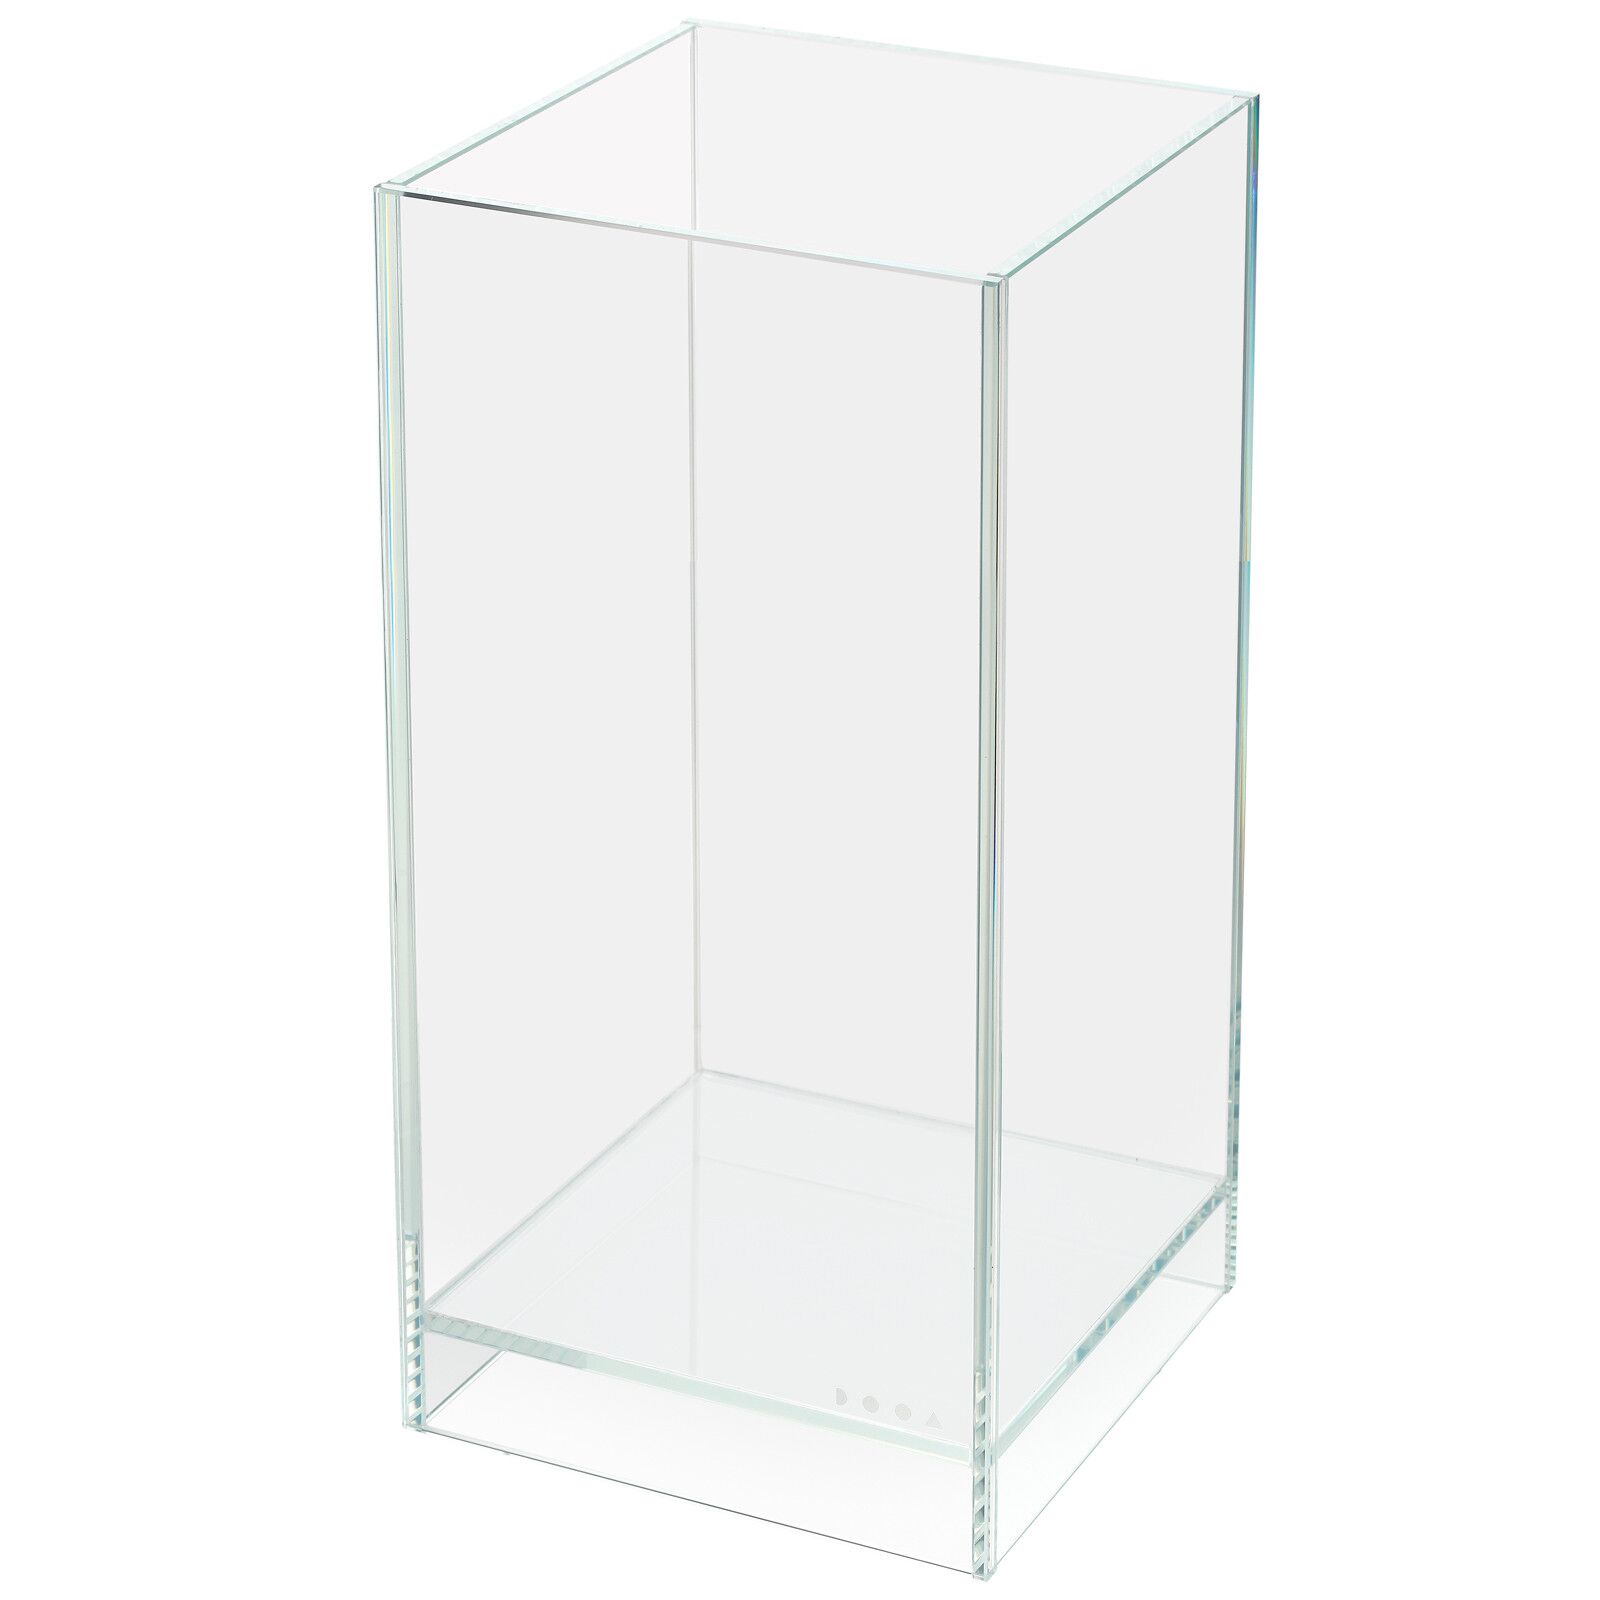 DOOA - Neo Glass AIR - 20 x 20 x 35 cm  Aquasabi - Aquascaping Shop